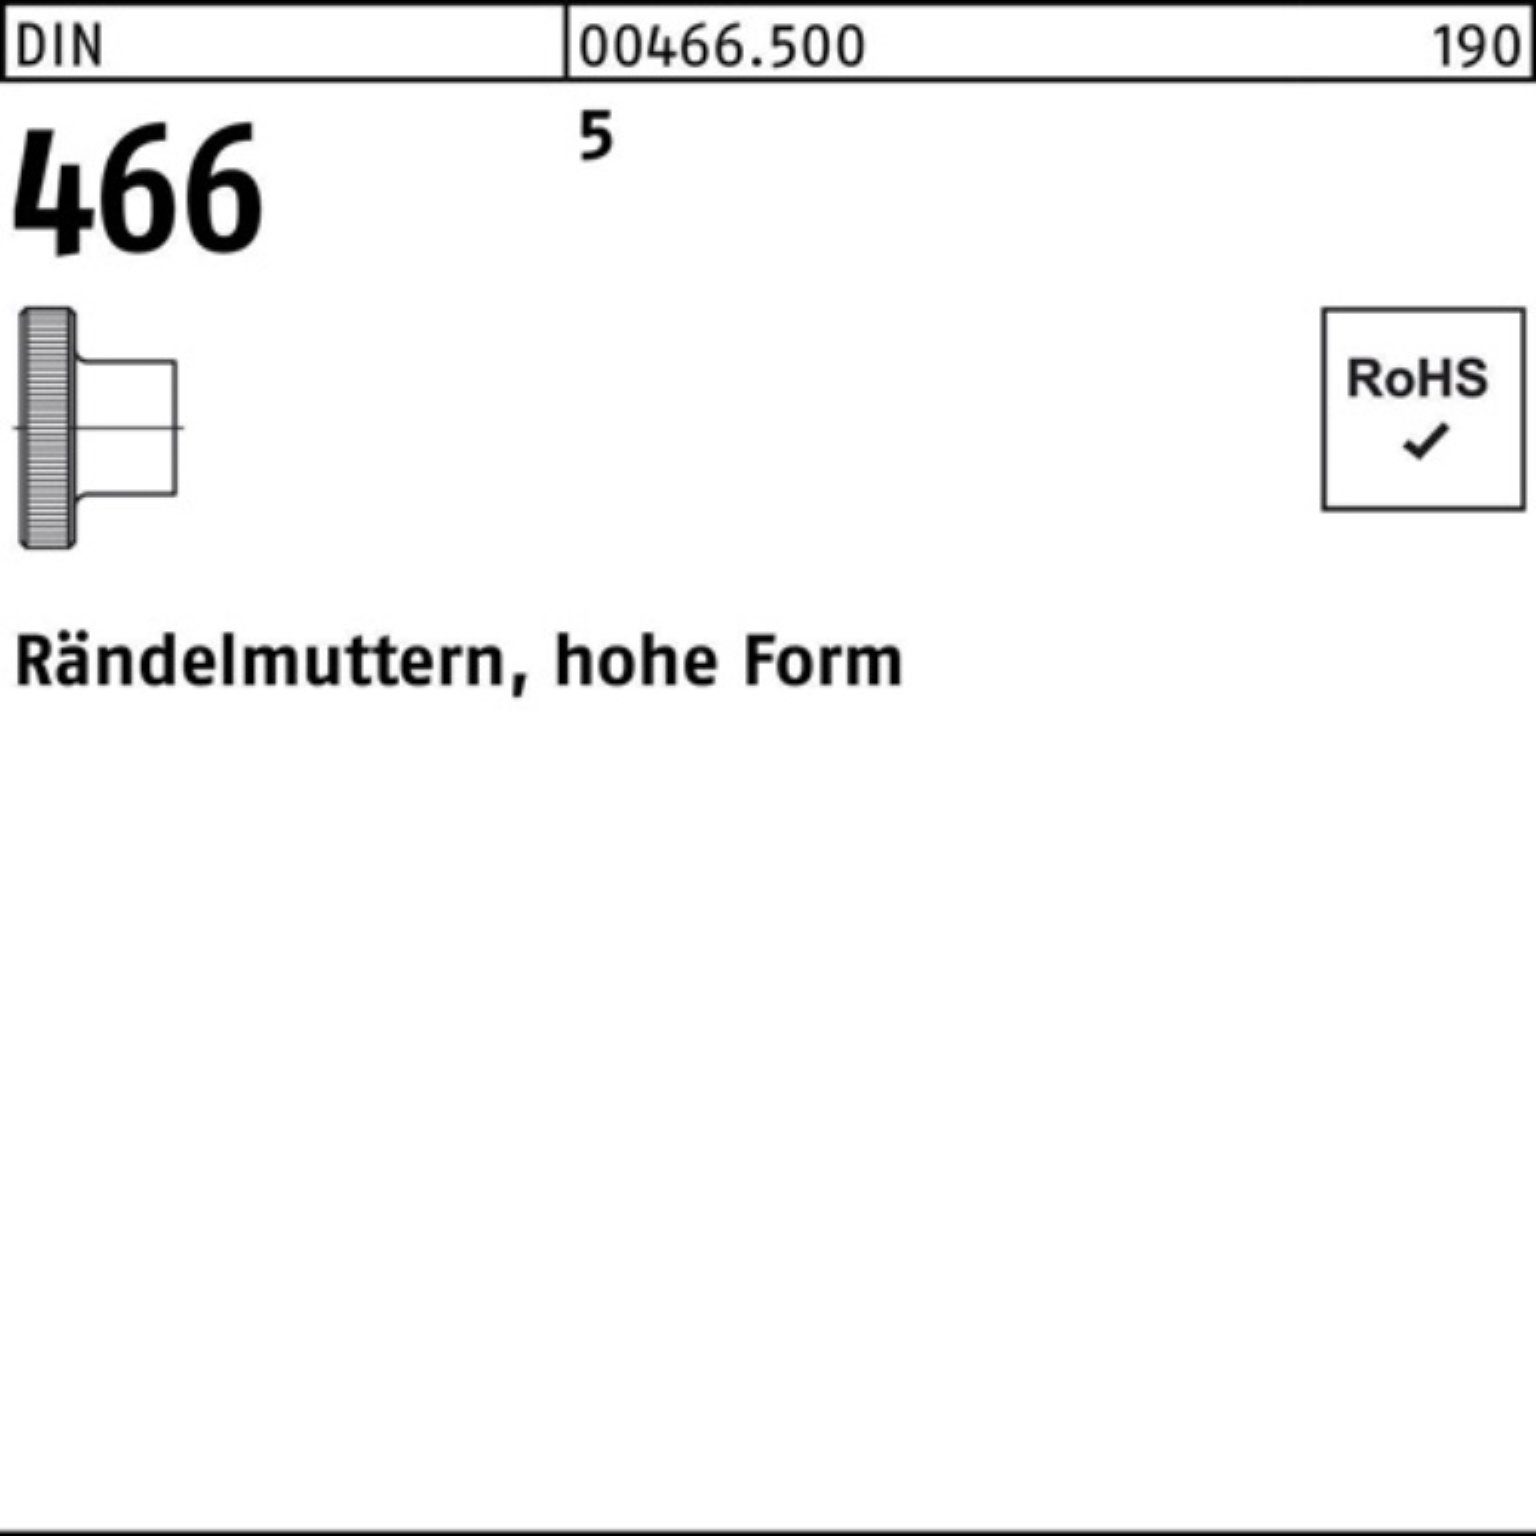 Reyher Rändelmutter 5 Stück DIN R 466 Rändelmutter FormM3 Pack 5 100er 466 100 DIN hohe